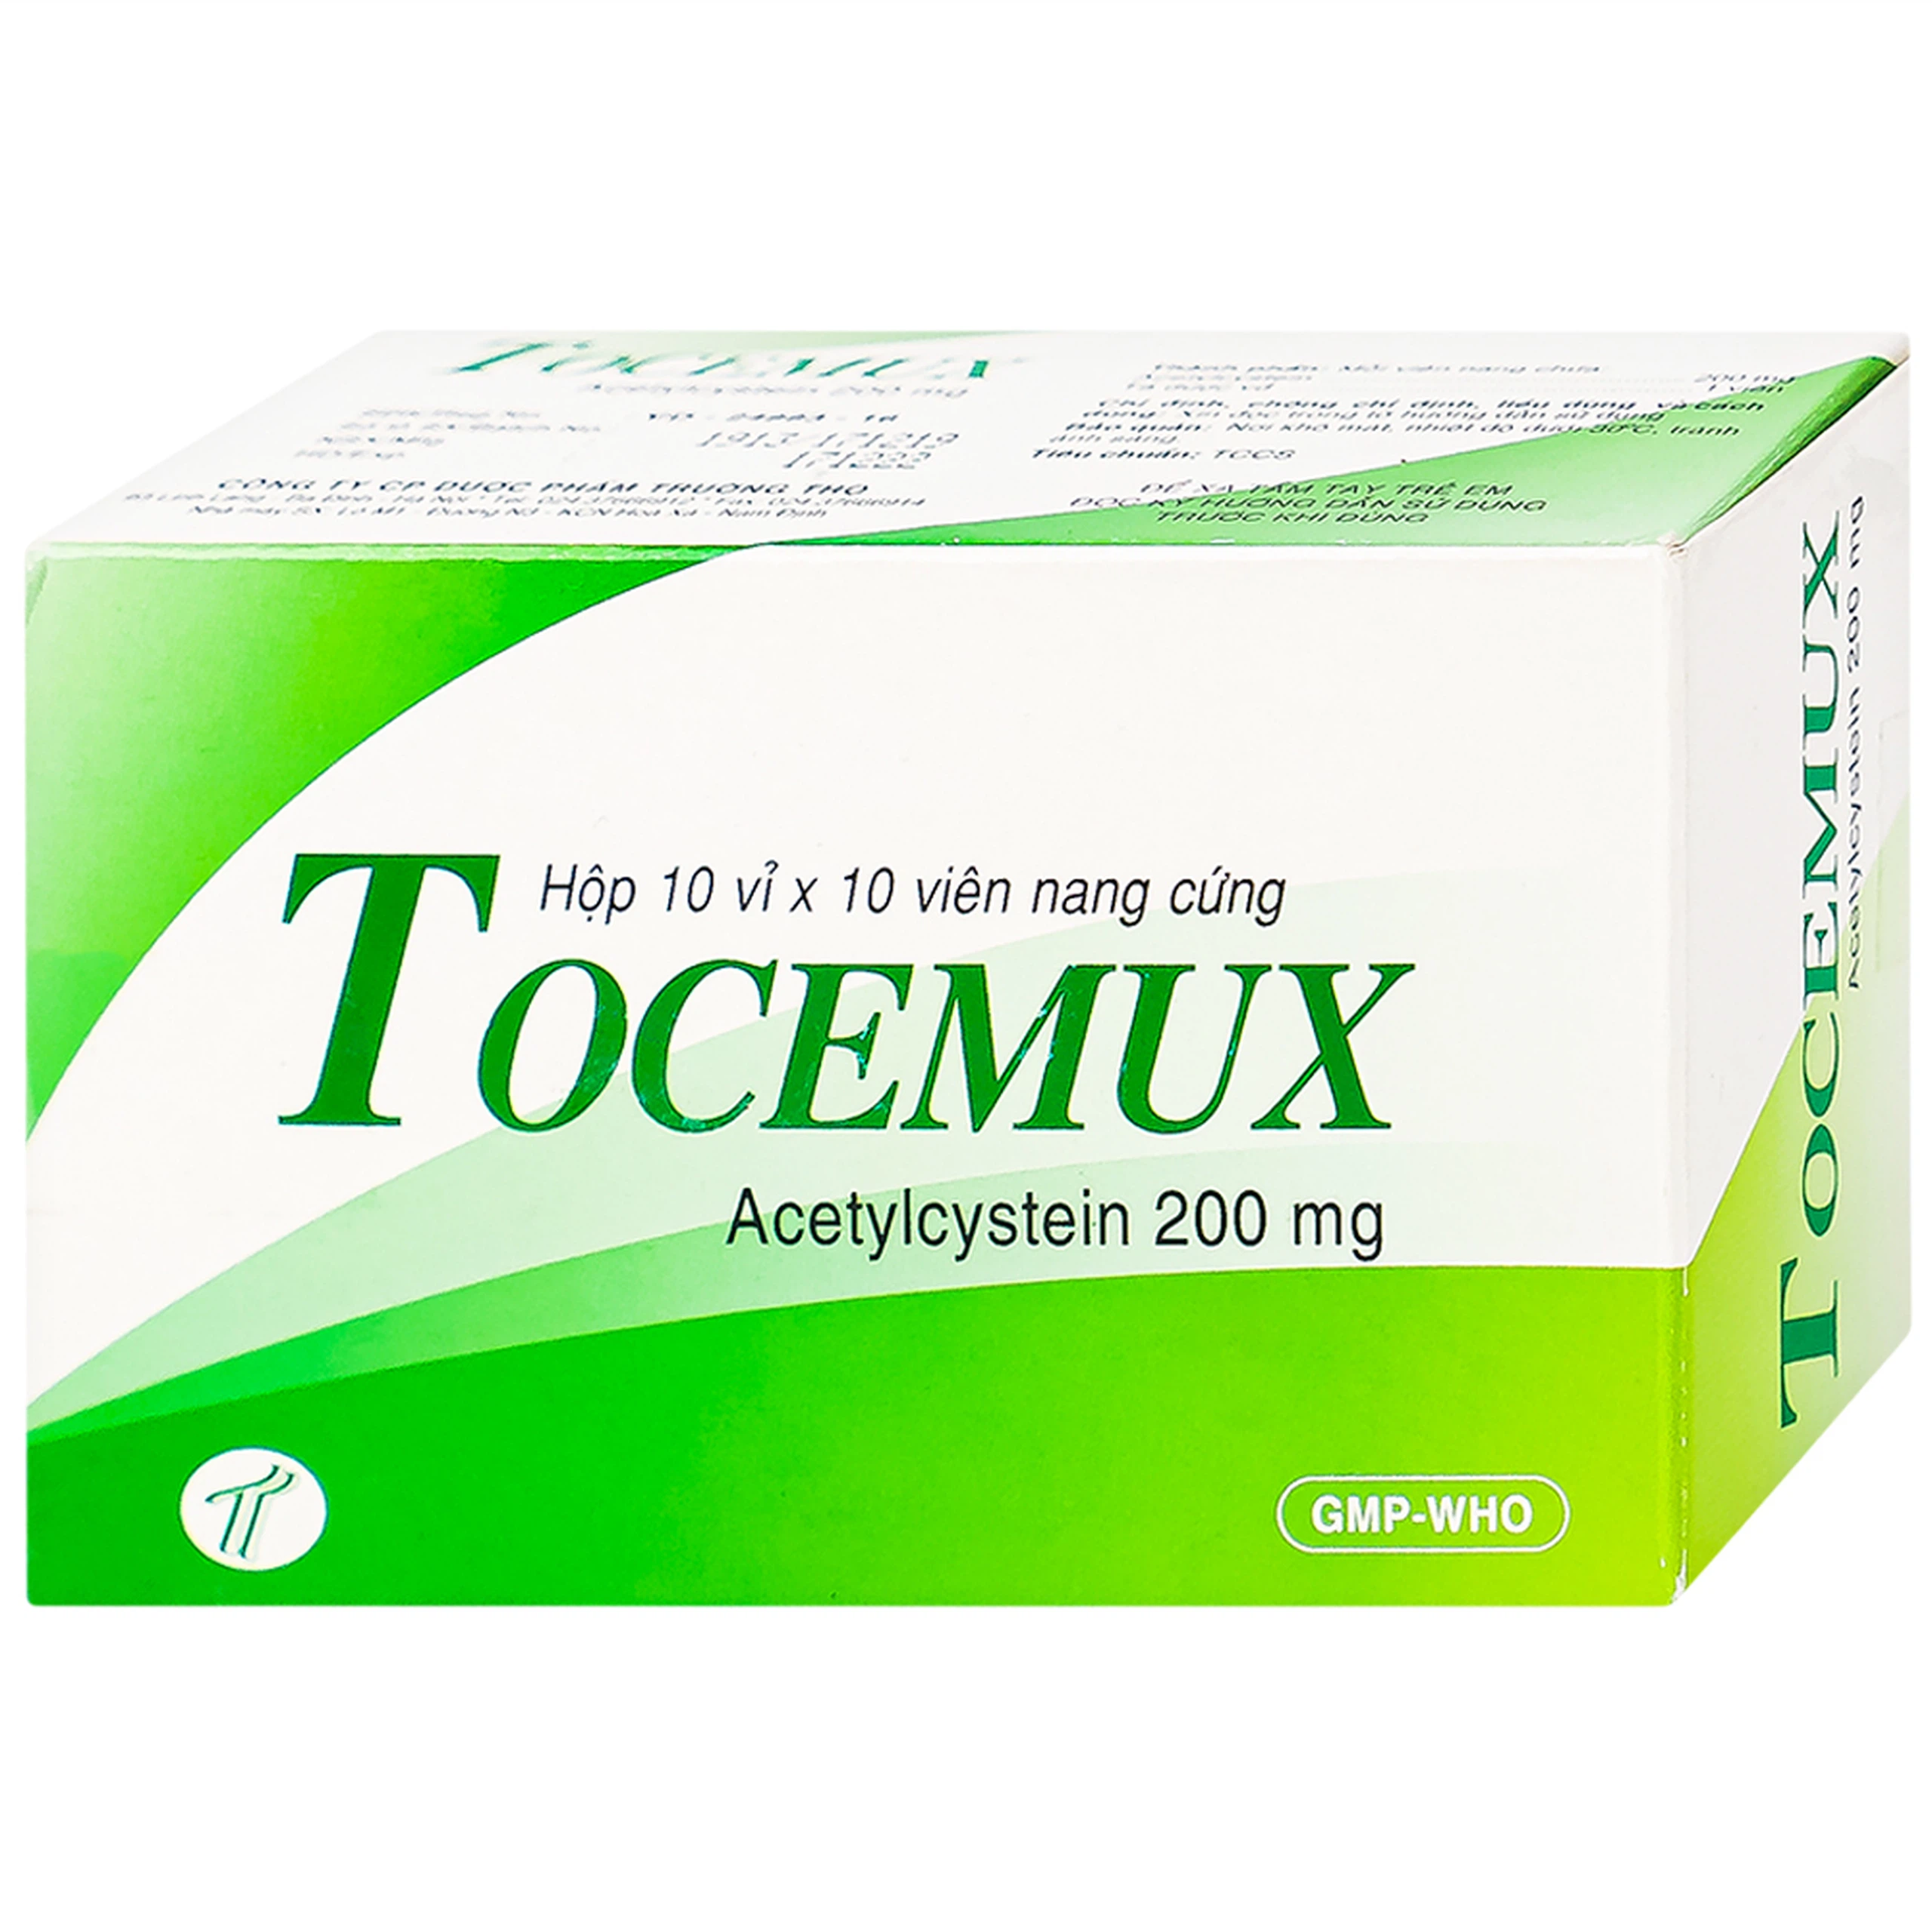 Thuốc Tocemux điều trị tiêu chất nhầy, bệnh lý hô hấp có đờm (10 vỉ x 10 viên)